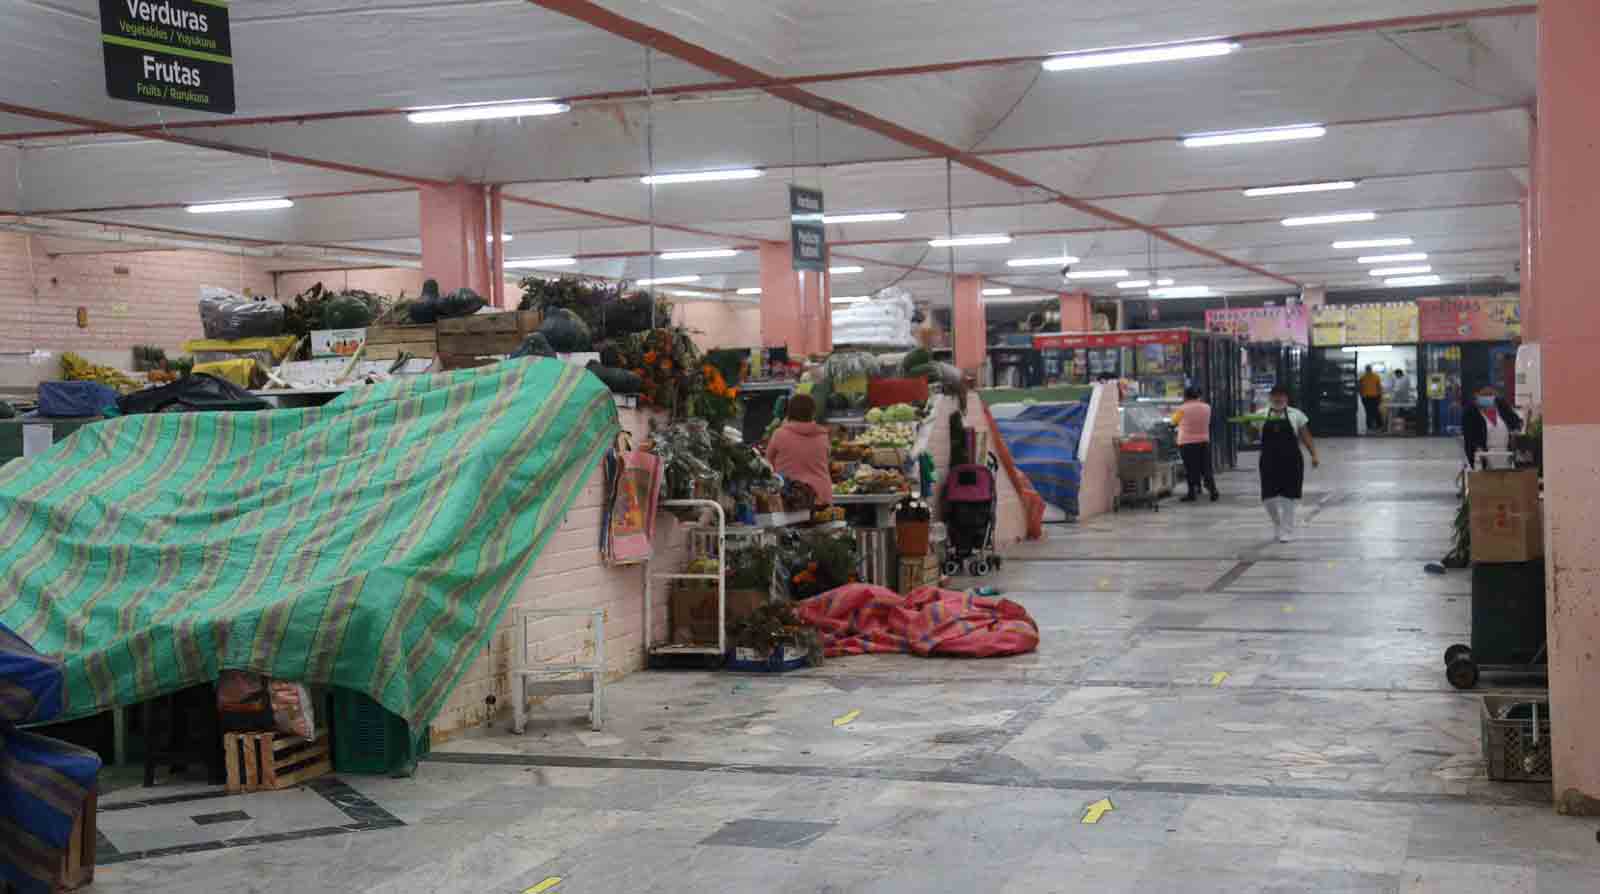 Puestos de venta cerrados en se pueden observar en el Mercado Iñaquito. Foto: Julio Estrella / EL COMERCIO.